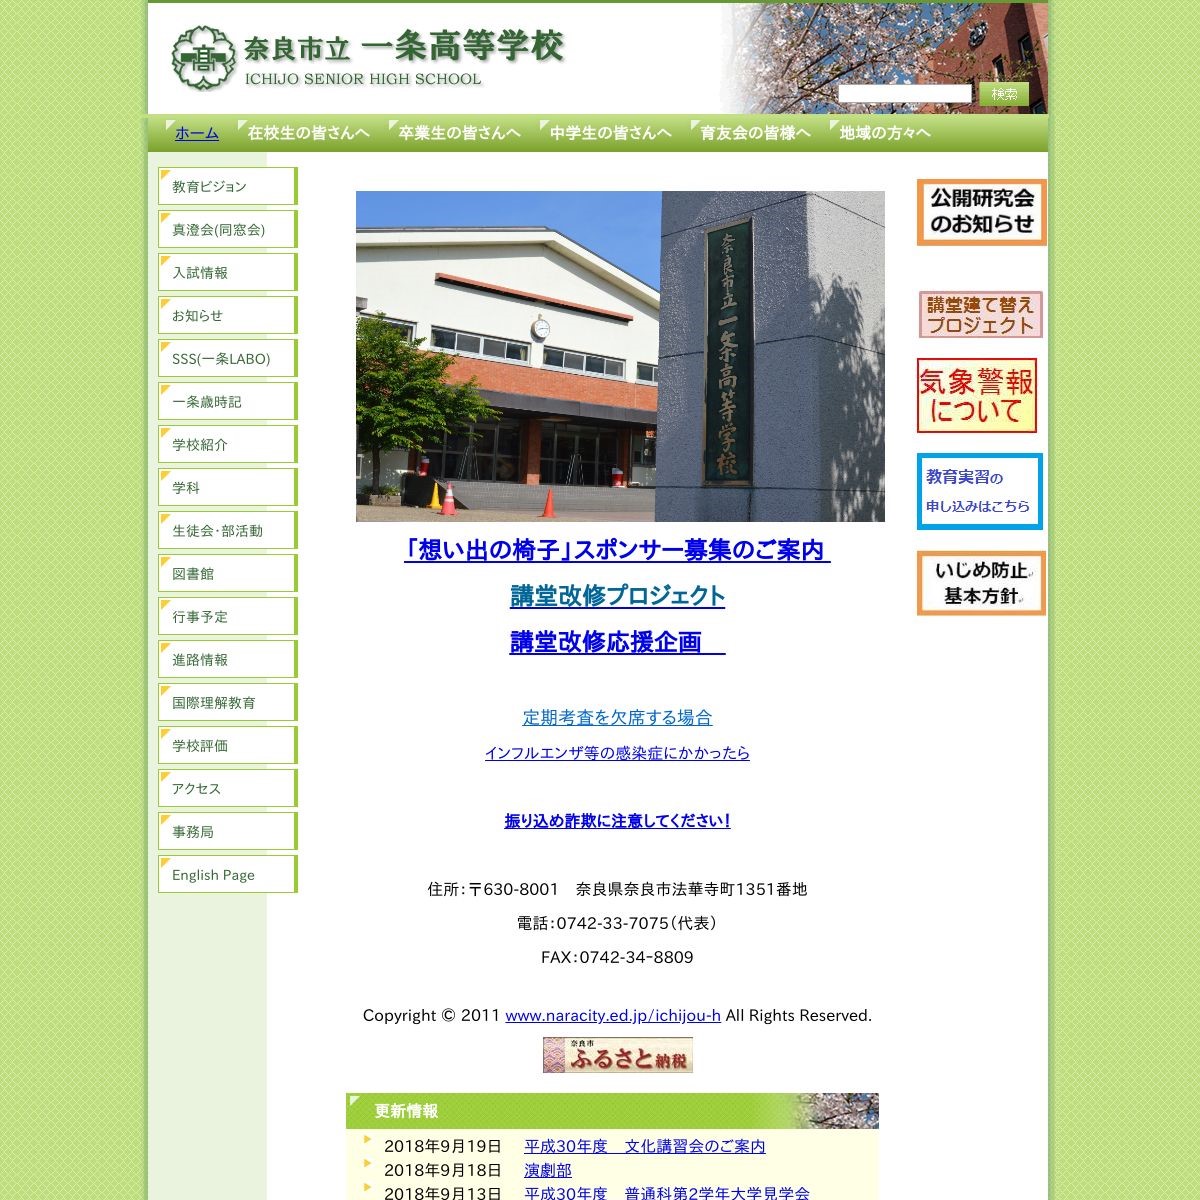 奈良市立一条高等学校ハンドボール部